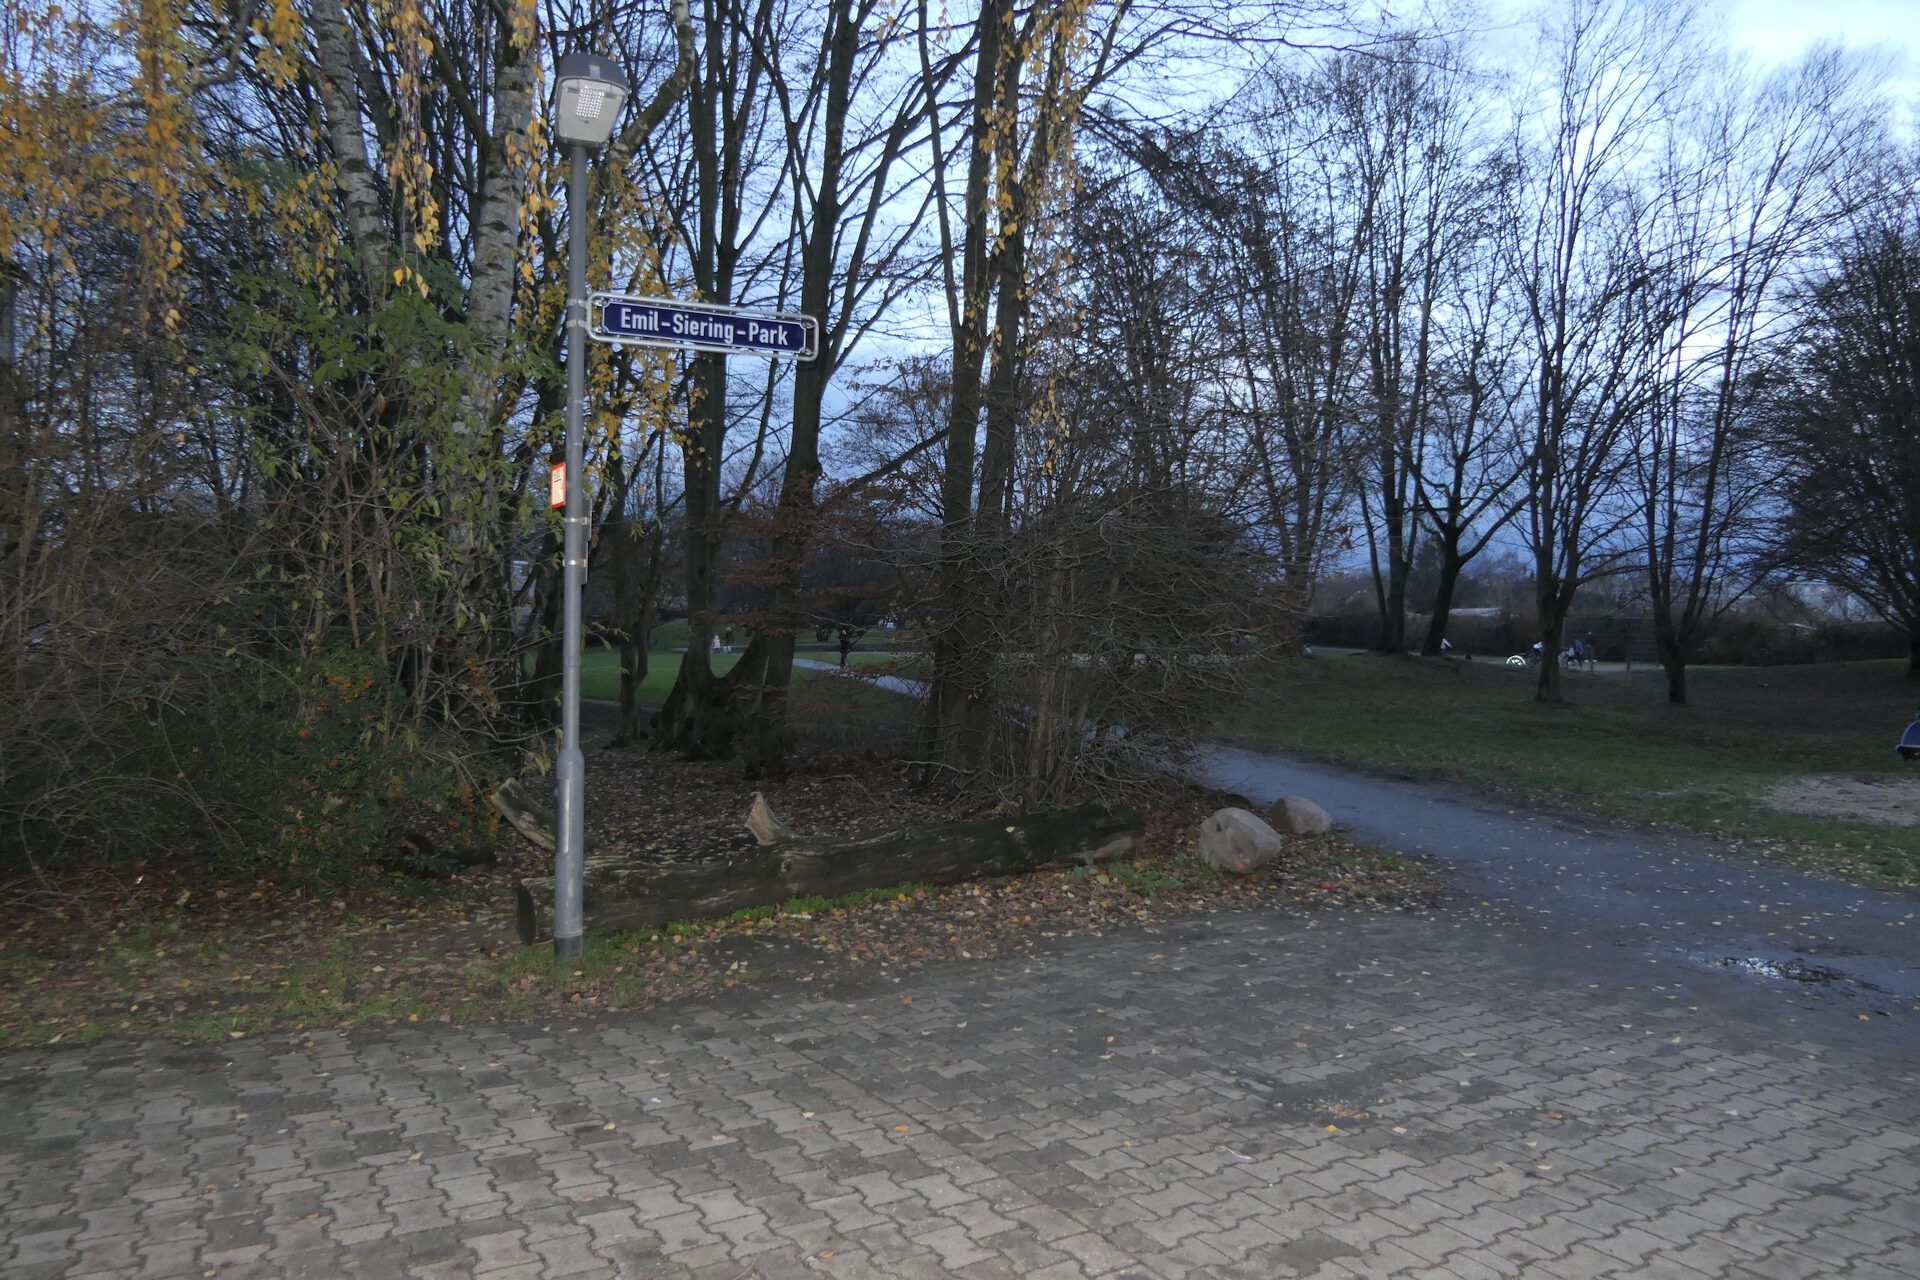 Emil-Siering-Park